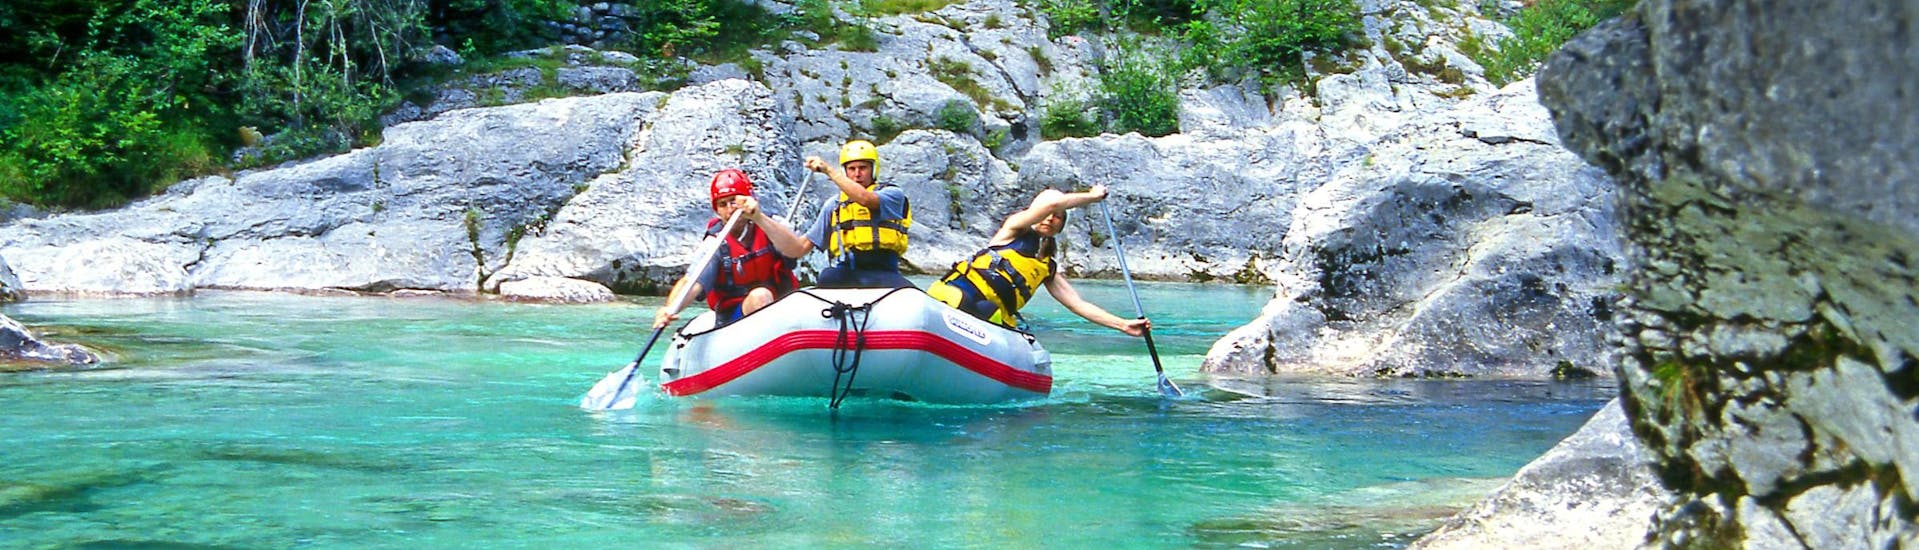 Eine Gruppe junger Menschen erfreut sich an Wildwasser Action beim Rafting & Canyoning Hotspot Sušec.